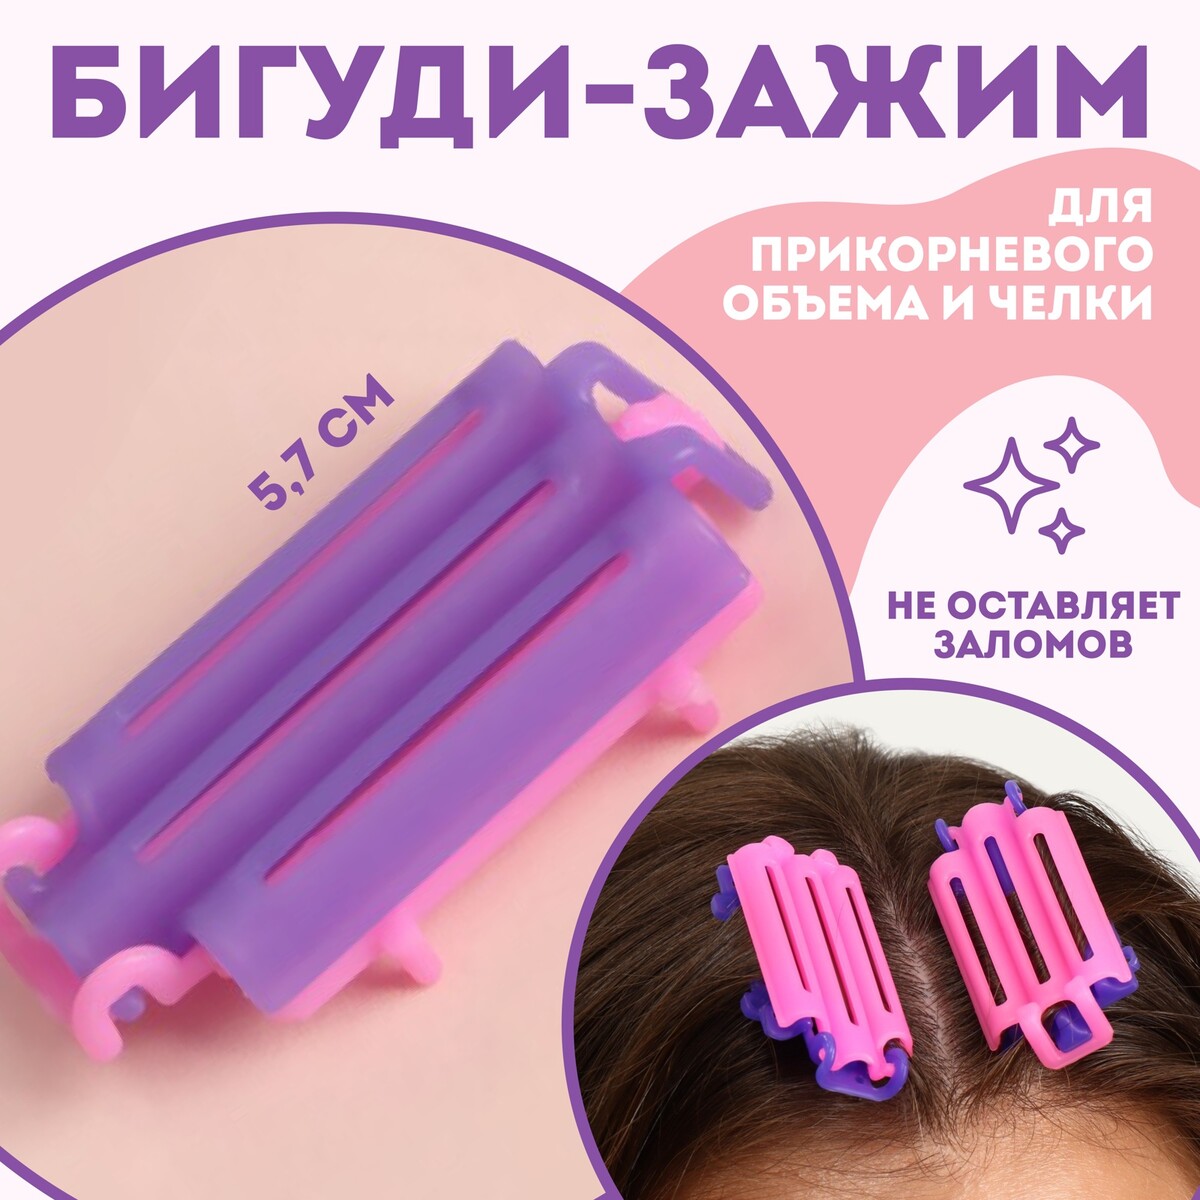 Бигуди для прикорневого объема, 5,7 × 3 × 1 см, 6 шт, цвет розовый/фиолетовый наушники jvc ha kd5 p ef розовый фиолетовый